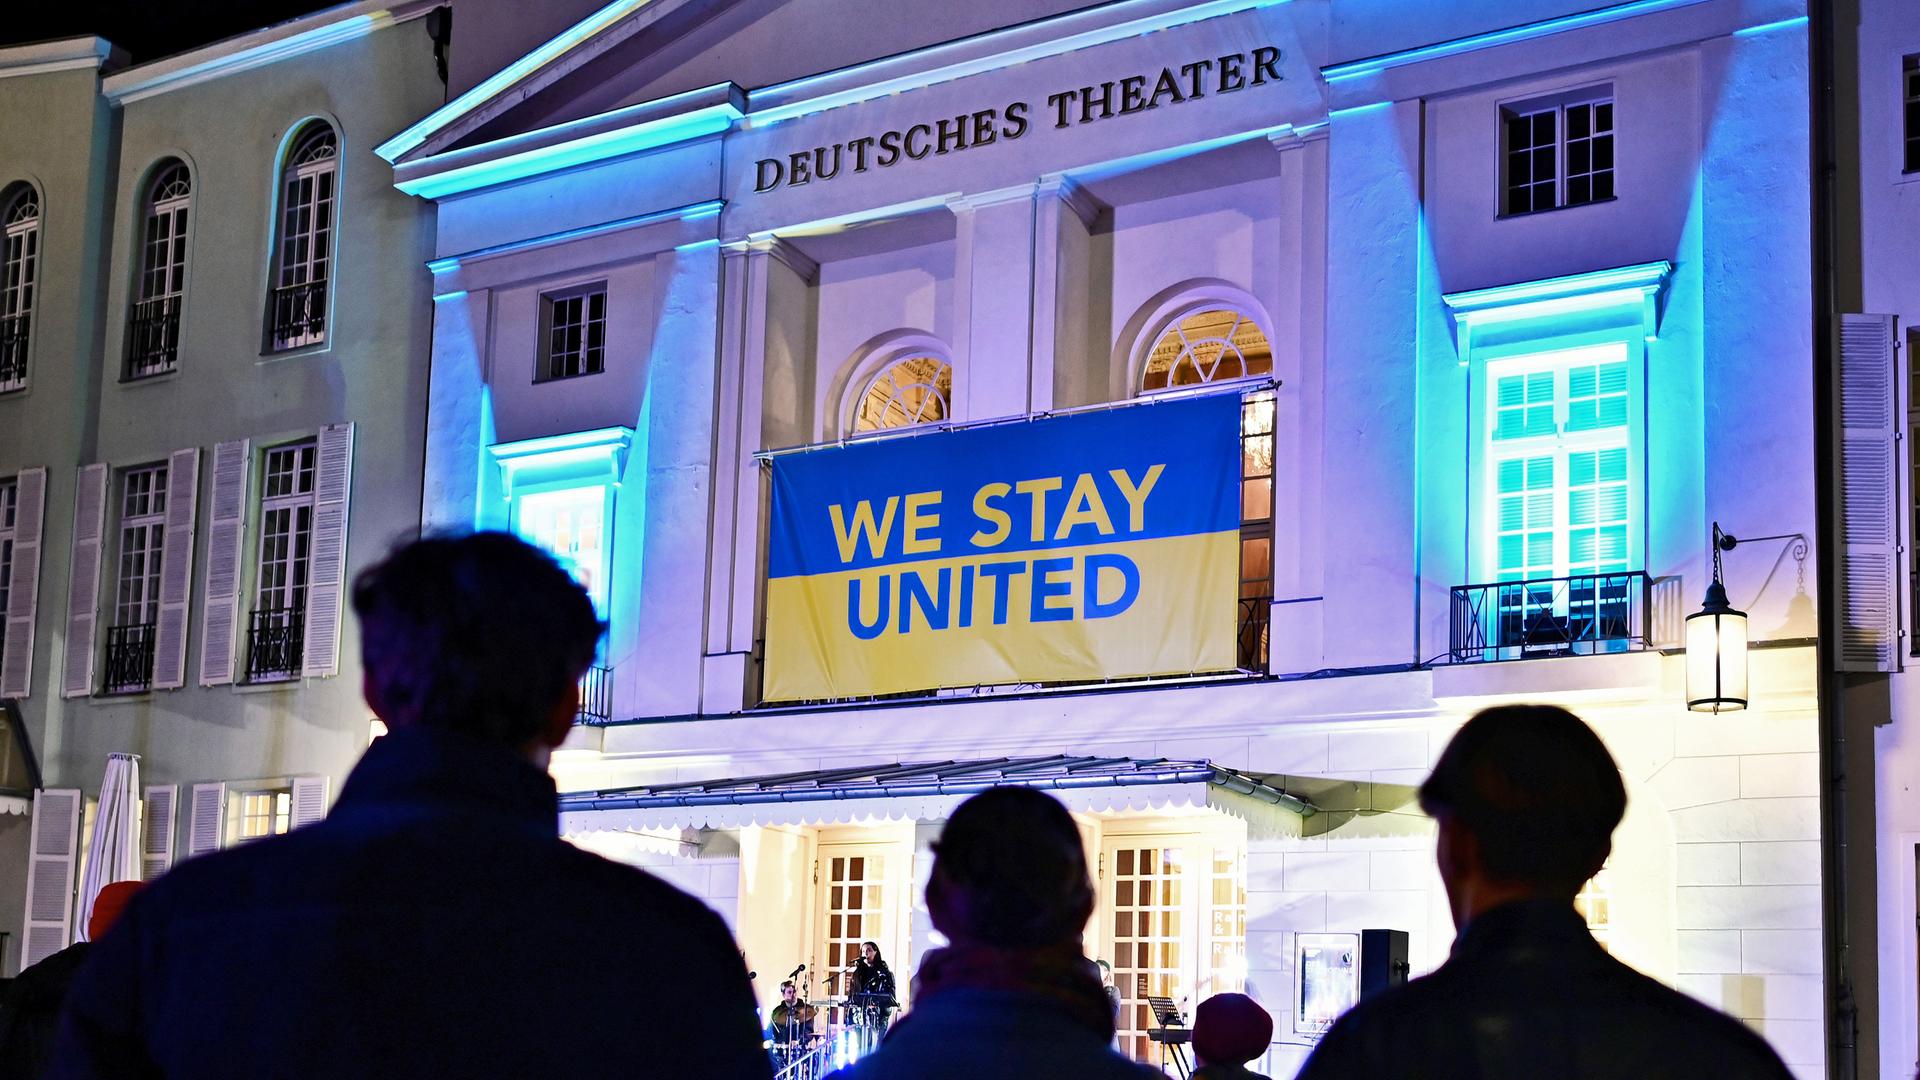 Fassade des Deutsches Theater in Berlin, über dem Eingang hängt ein blau-gelbes Banner mit der Aufschrift "we stay united".